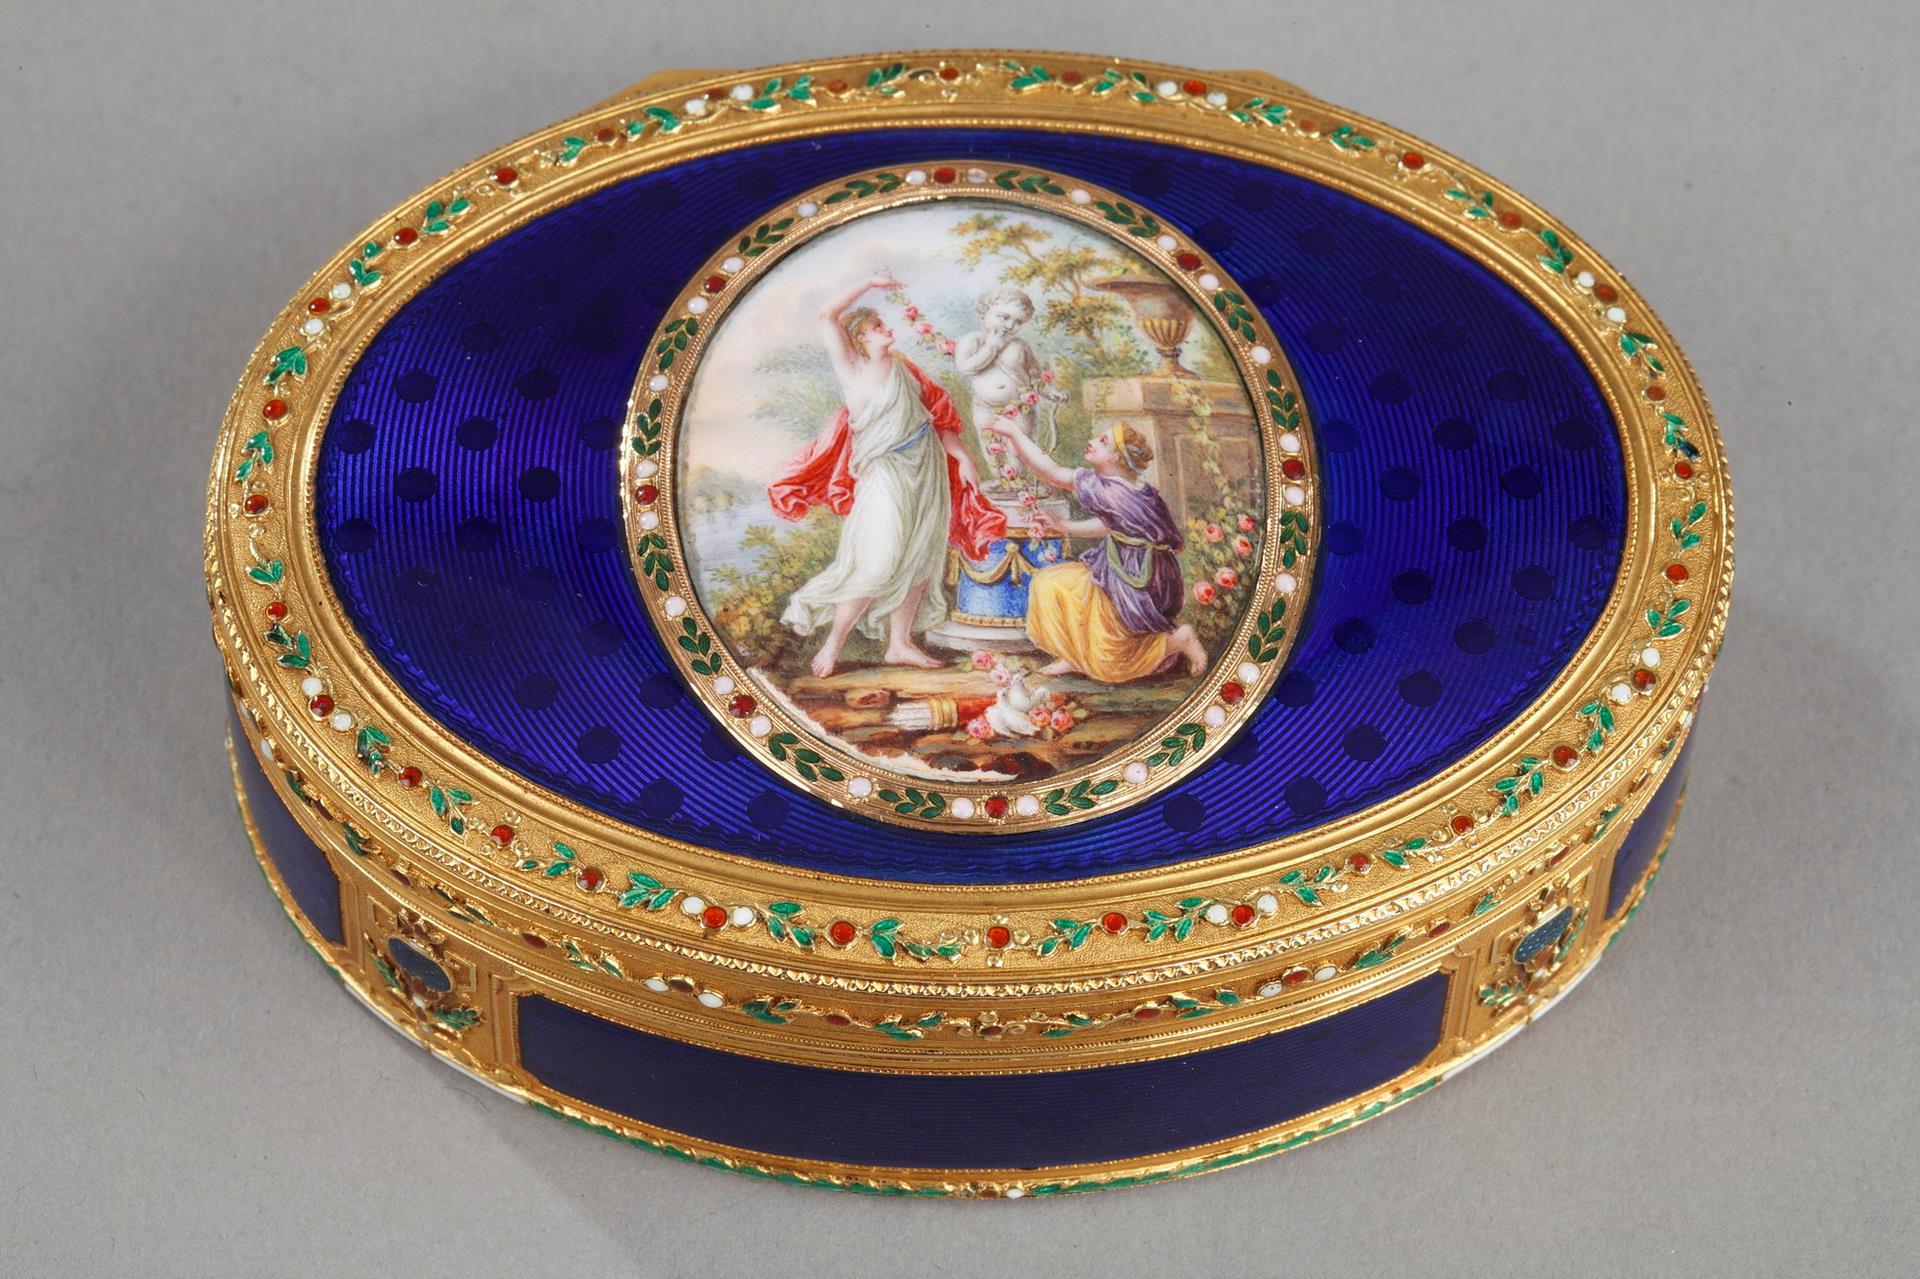 18th cnetury gold and blu enamel with mythological scene